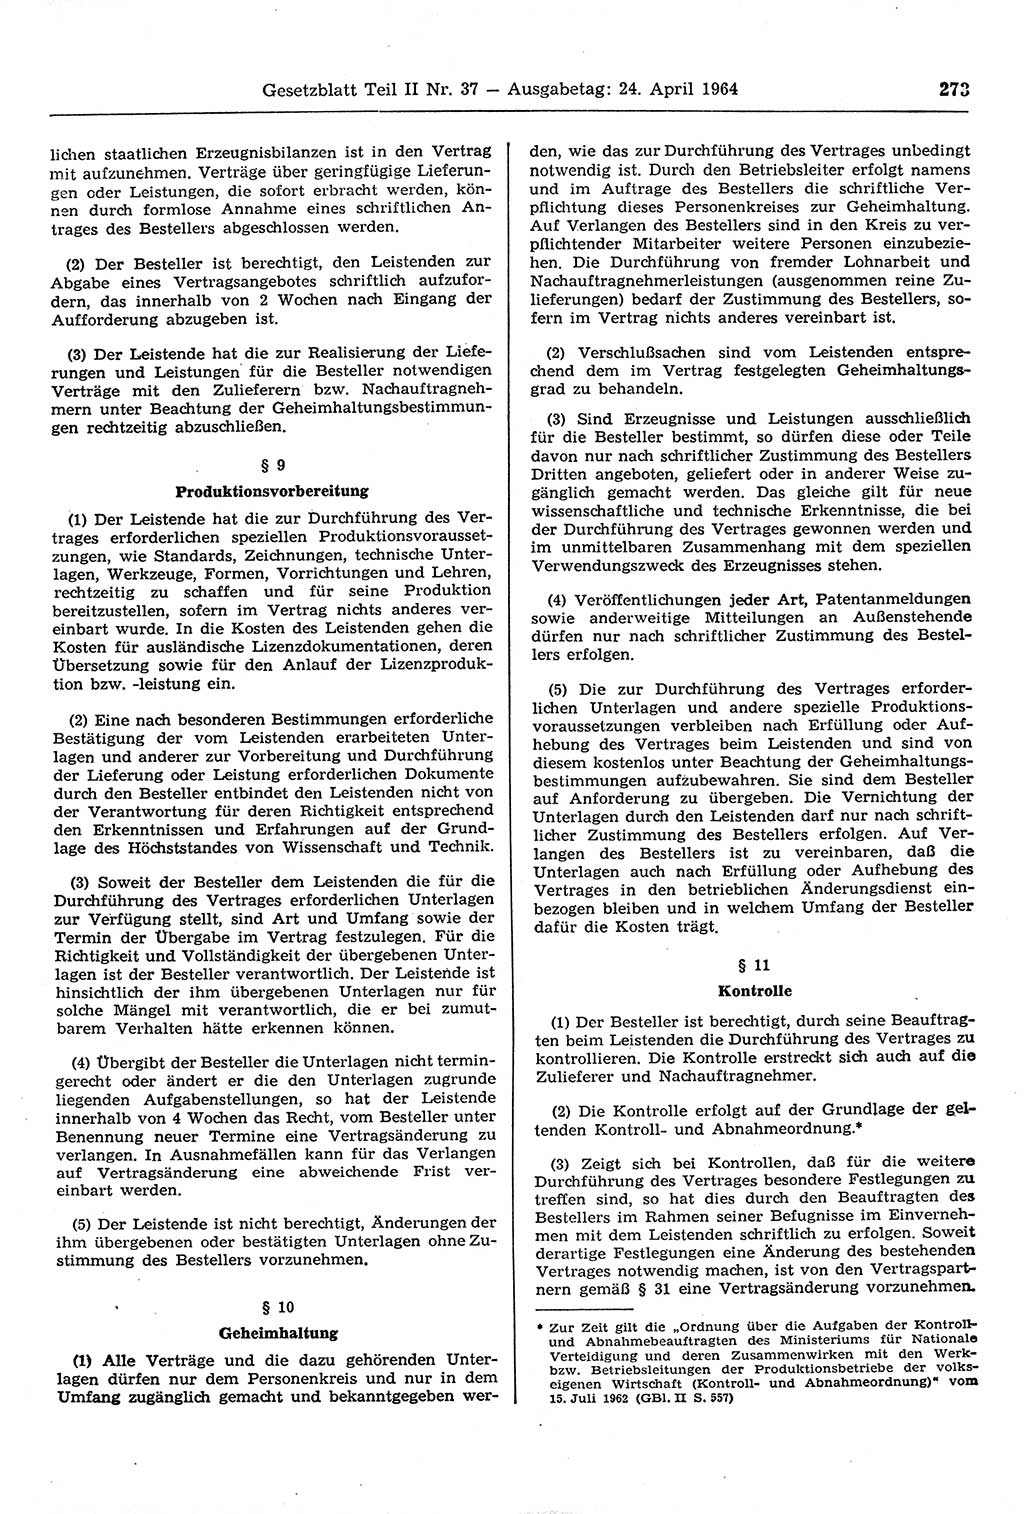 Gesetzblatt (GBl.) der Deutschen Demokratischen Republik (DDR) Teil ⅠⅠ 1964, Seite 273 (GBl. DDR ⅠⅠ 1964, S. 273)